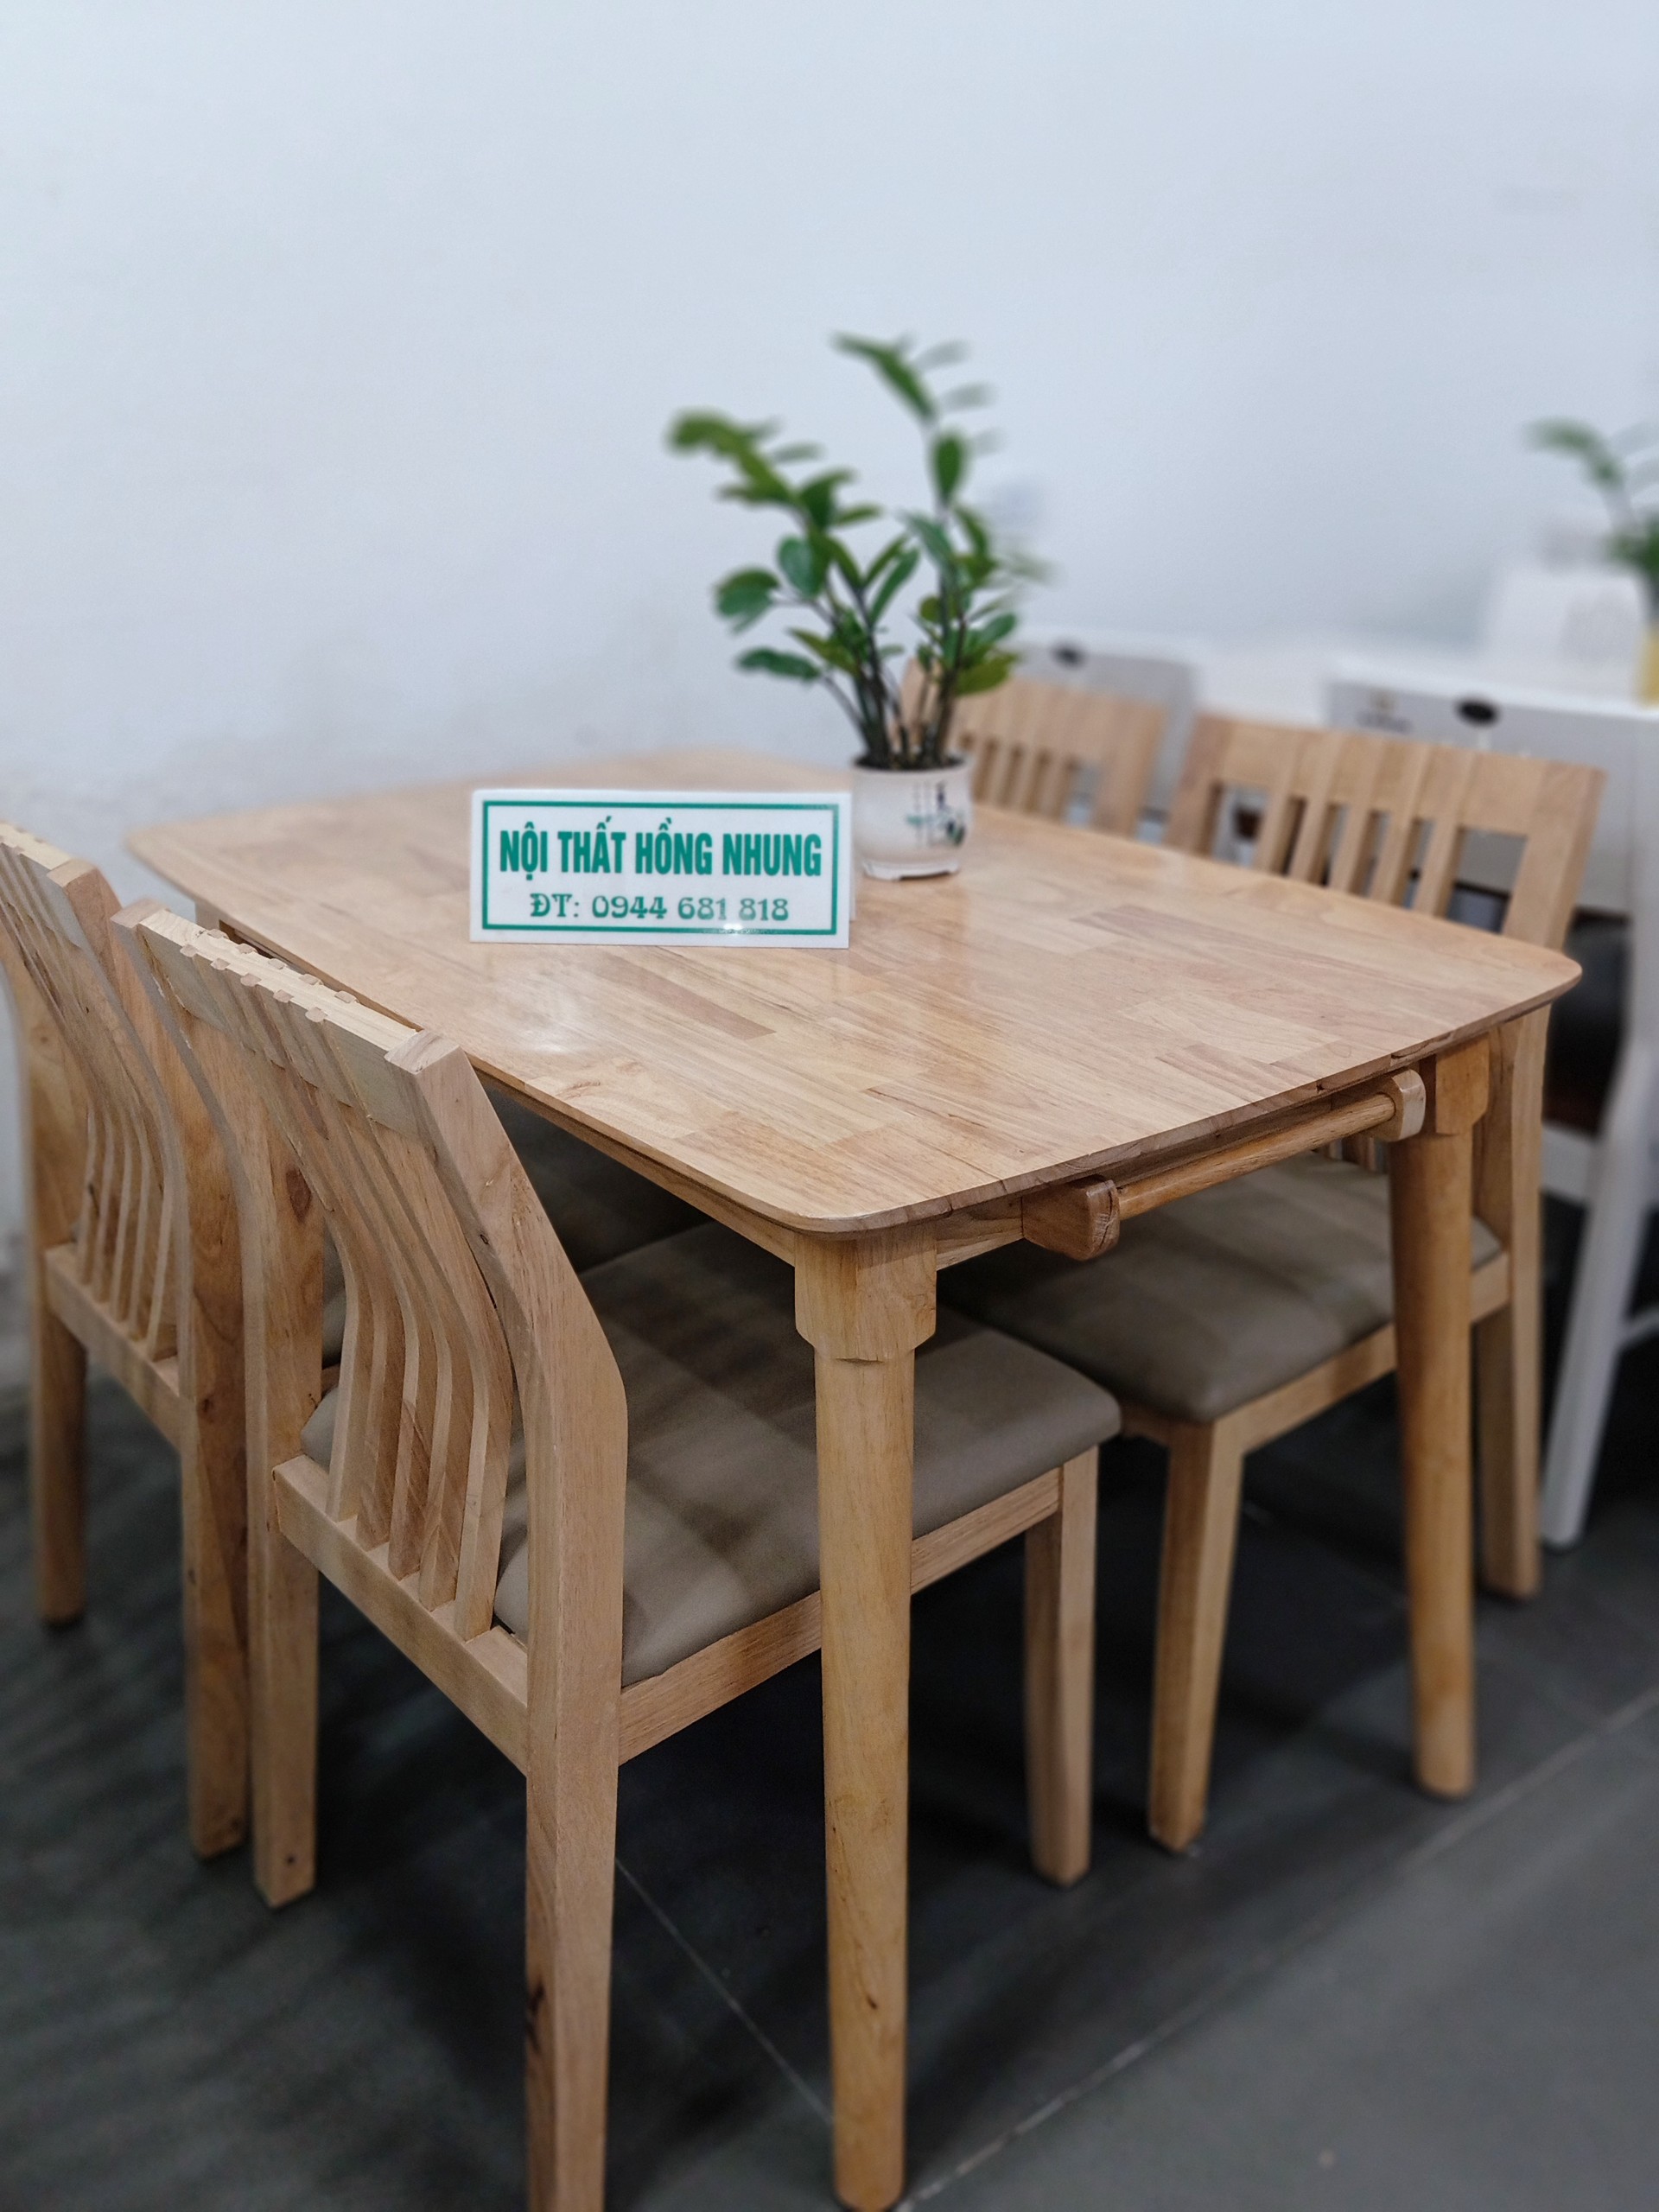 Bộ bàn ghế ăn gỗ cao su (4 ghế tựa nan) giá rẻ Lào Cai là sản phẩm phù hợp với những ai yêu thích một phong cách đơn giản và hiện đại. Với bộ ghế có tựa nan êm ái và bàn ăn với thiết kế đơn giản nhưng tinh tế, sản phẩm này sẽ làm cho không gian ăn uống trở nên ấm cúng và tiện nghi hơn bao giờ hết.